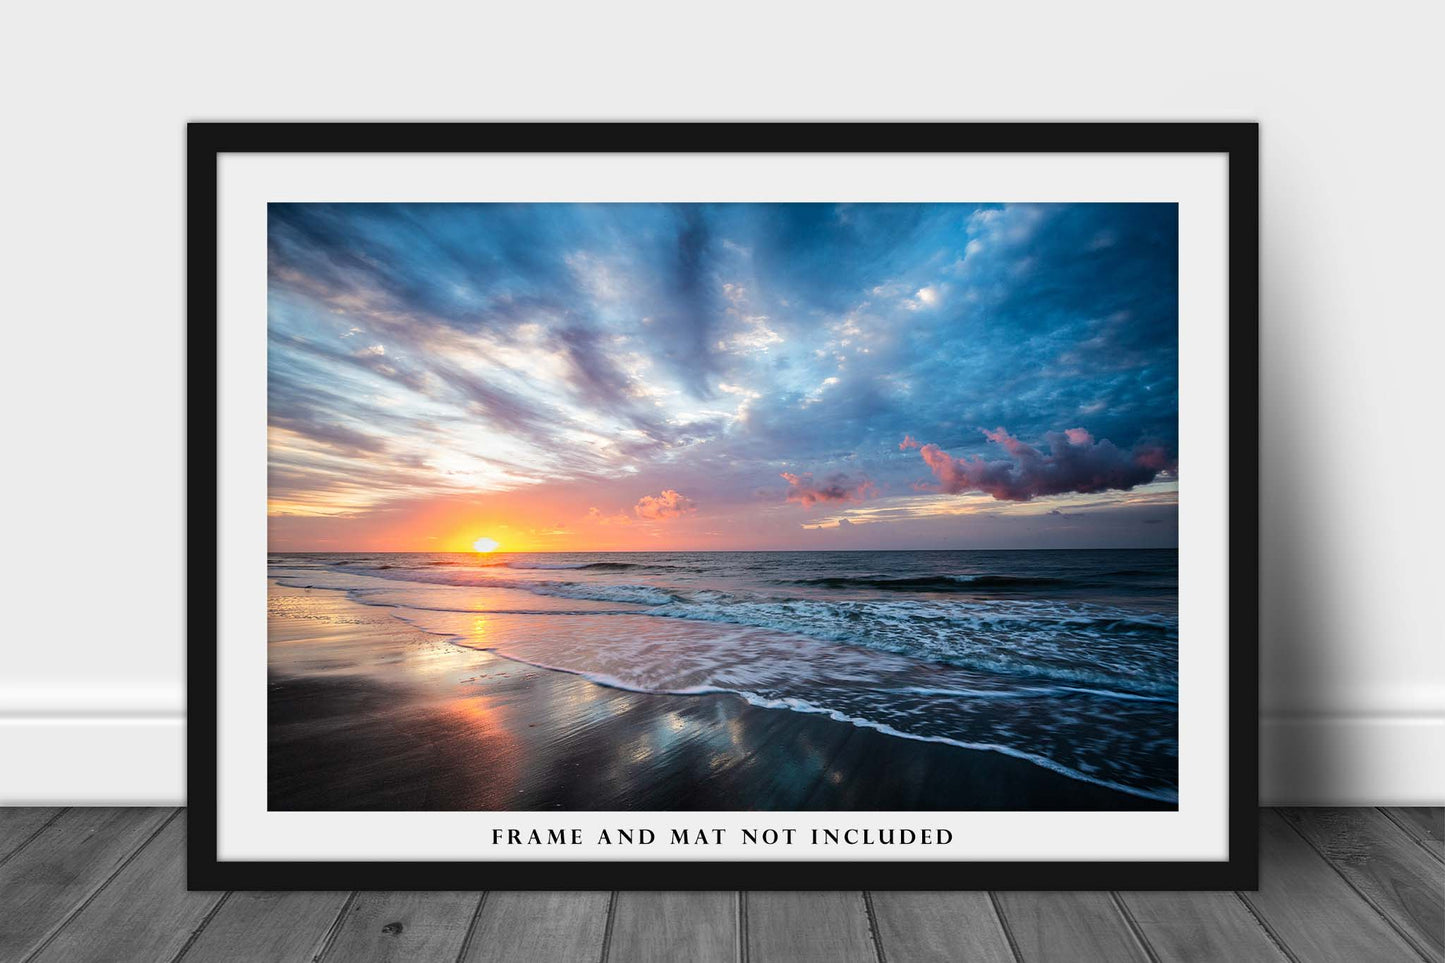 Coastal Photo Print | Sunrise Over Beach at Hilton Head Island SC Picture | South Carolina Wall Art | Seascape Photography | Nature Decor